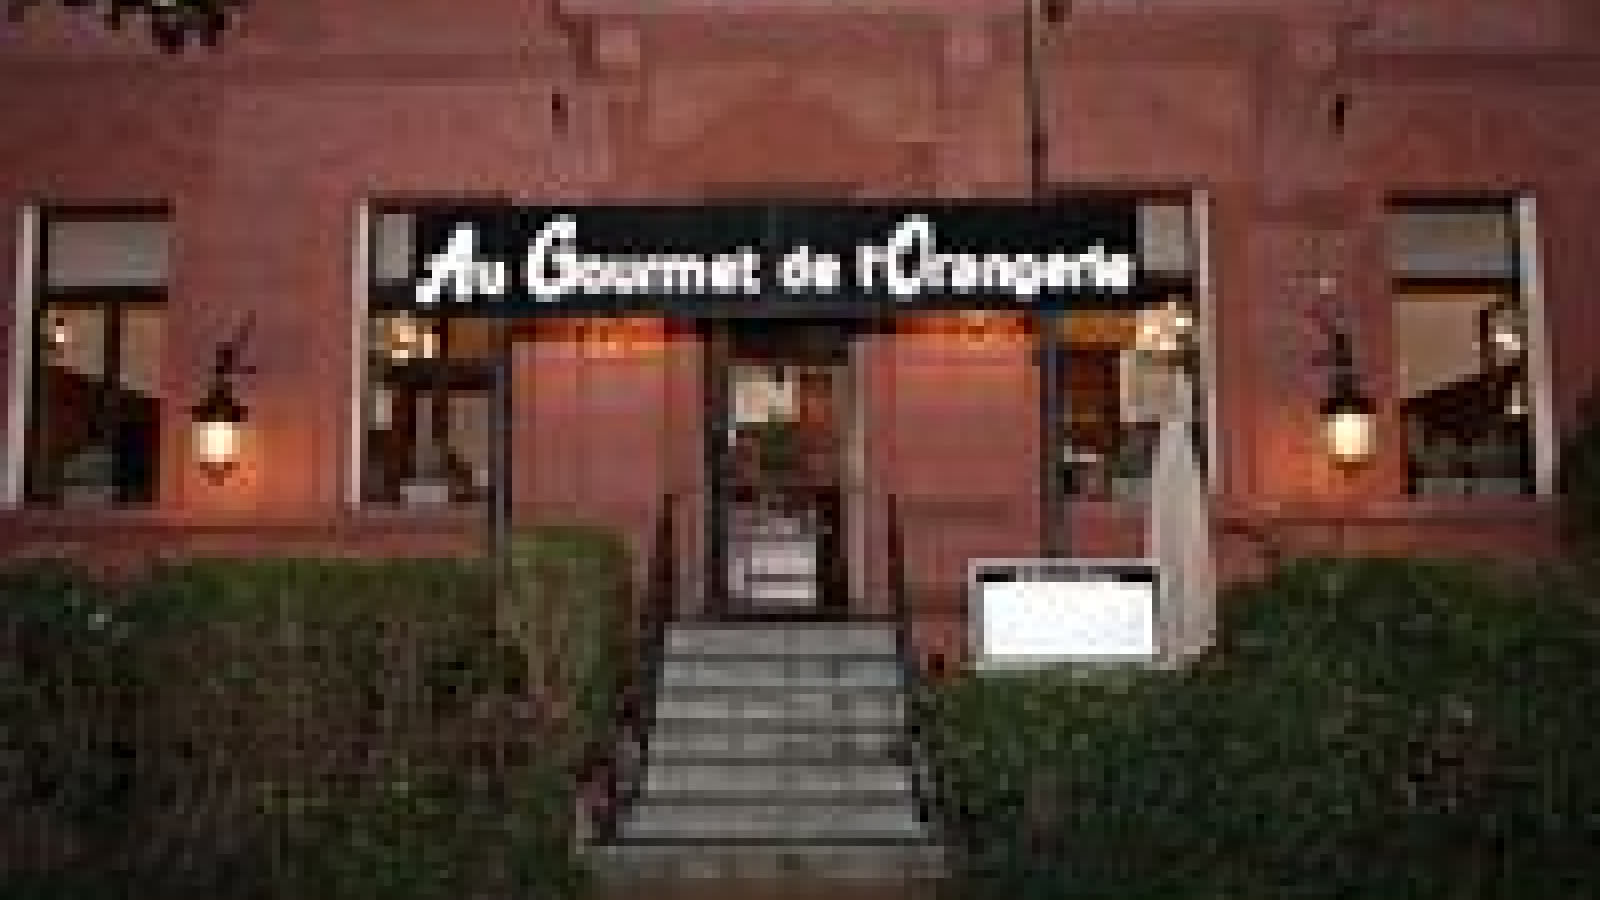 Coffret gourmet - Le restaurant L'Orangerie